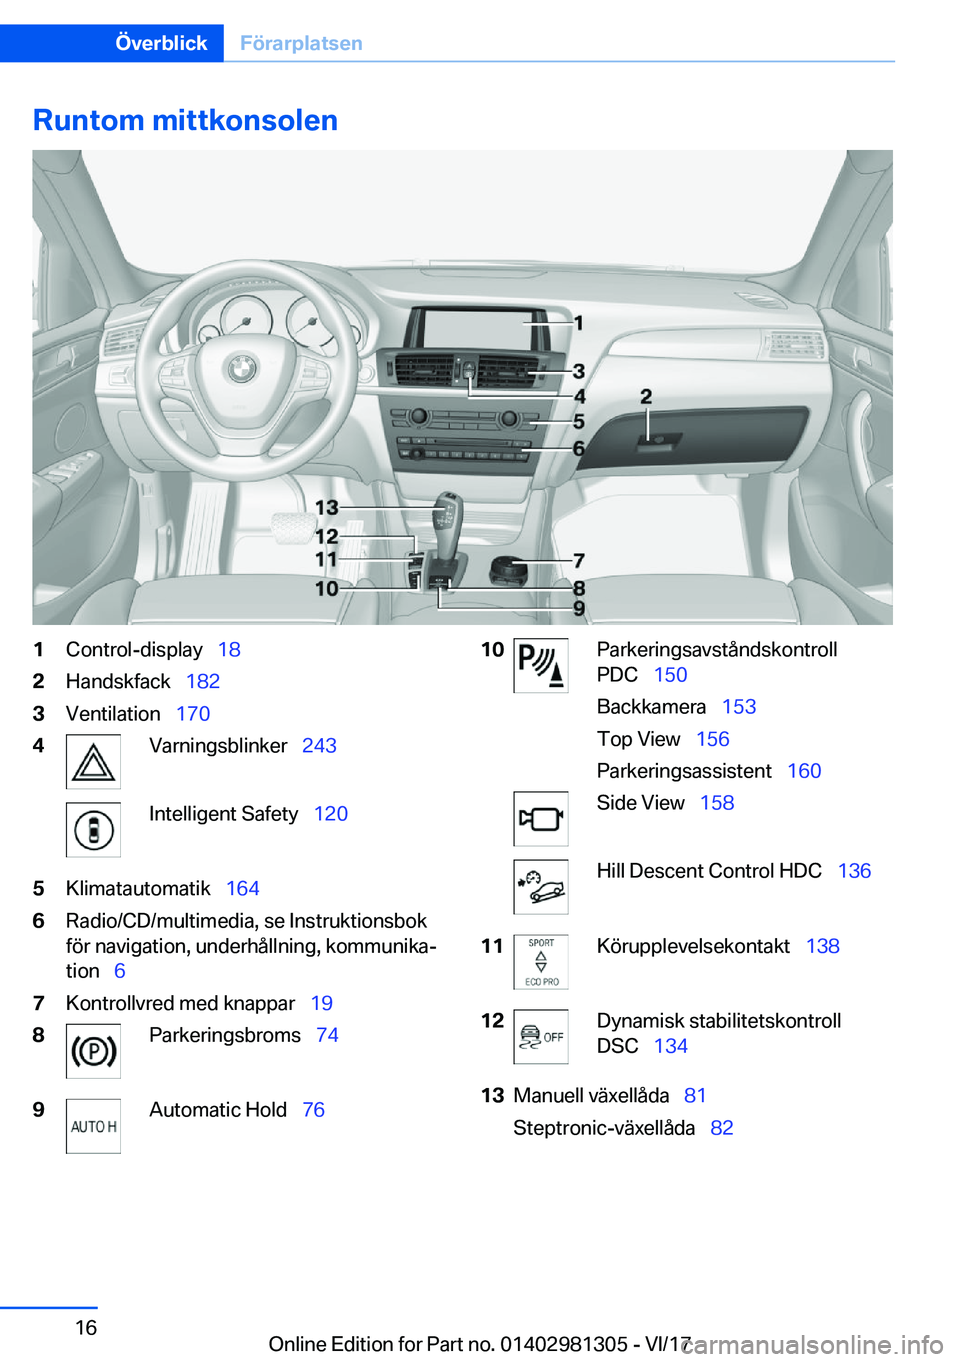 BMW X4 2018  InstruktionsbÖcker (in Swedish) �R�u�n�t�o�m��m�i�t�t�k�o�n�s�o�l�e�n�1�C�o�n�t�r�o�l�-�d�i�s�p�l�a�y\_�1�8�2�H�a�n�d�s�k�f�a�c�k\_�1�8�2�3�V�e�n�t�i�l�a�t�i�o�n\_�1�7�0�4�V�a�r�n�i�n�g�s�b�l�i�n�k�e�r\_ �2�4�3�I�n�t�e�l�l�